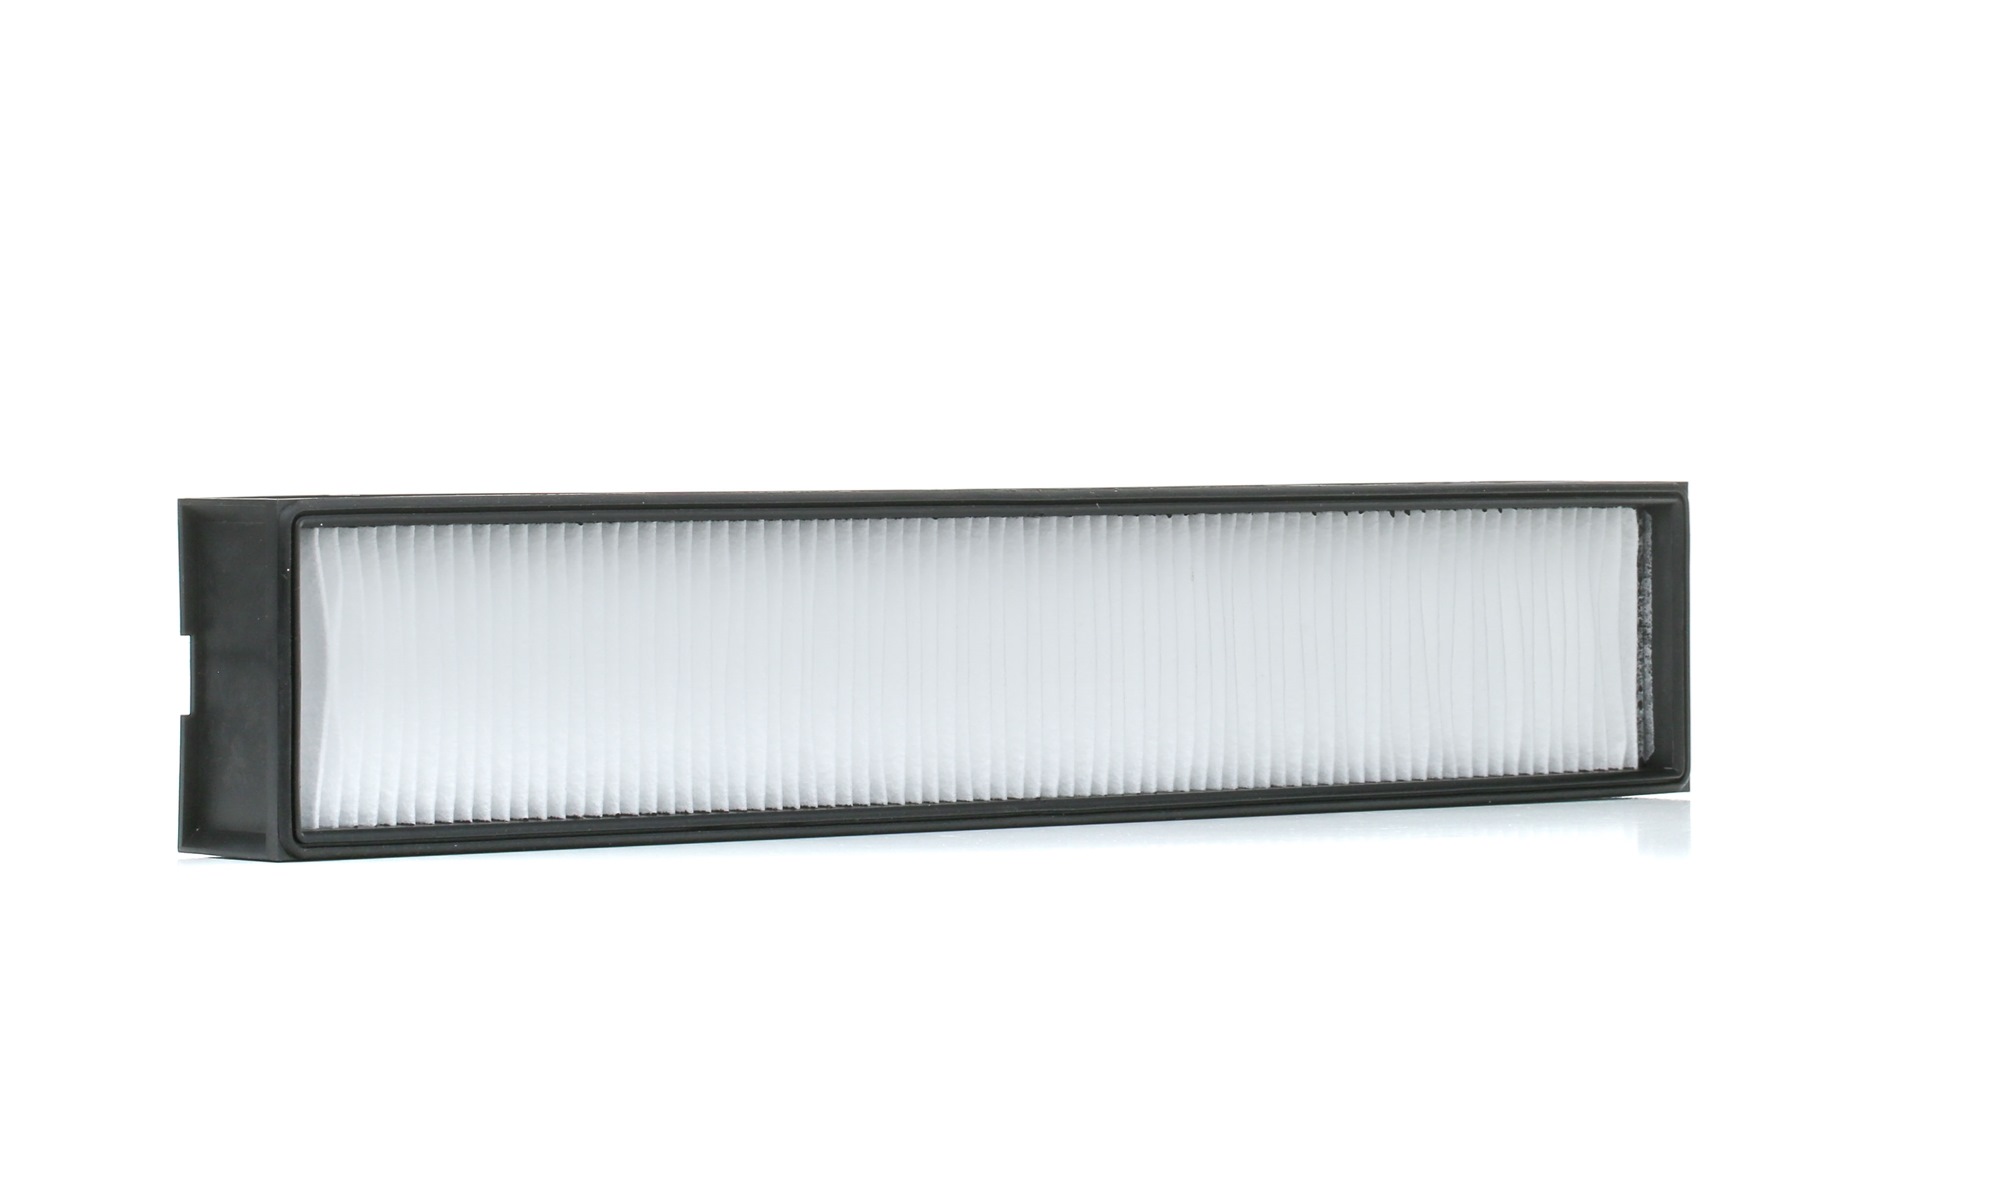 MANN-FILTER Particulate Filter, 498 mm x 89 mm x 43 mm Width: 89mm, Height: 43mm, Length: 498mm Cabin filter CU 5041 buy